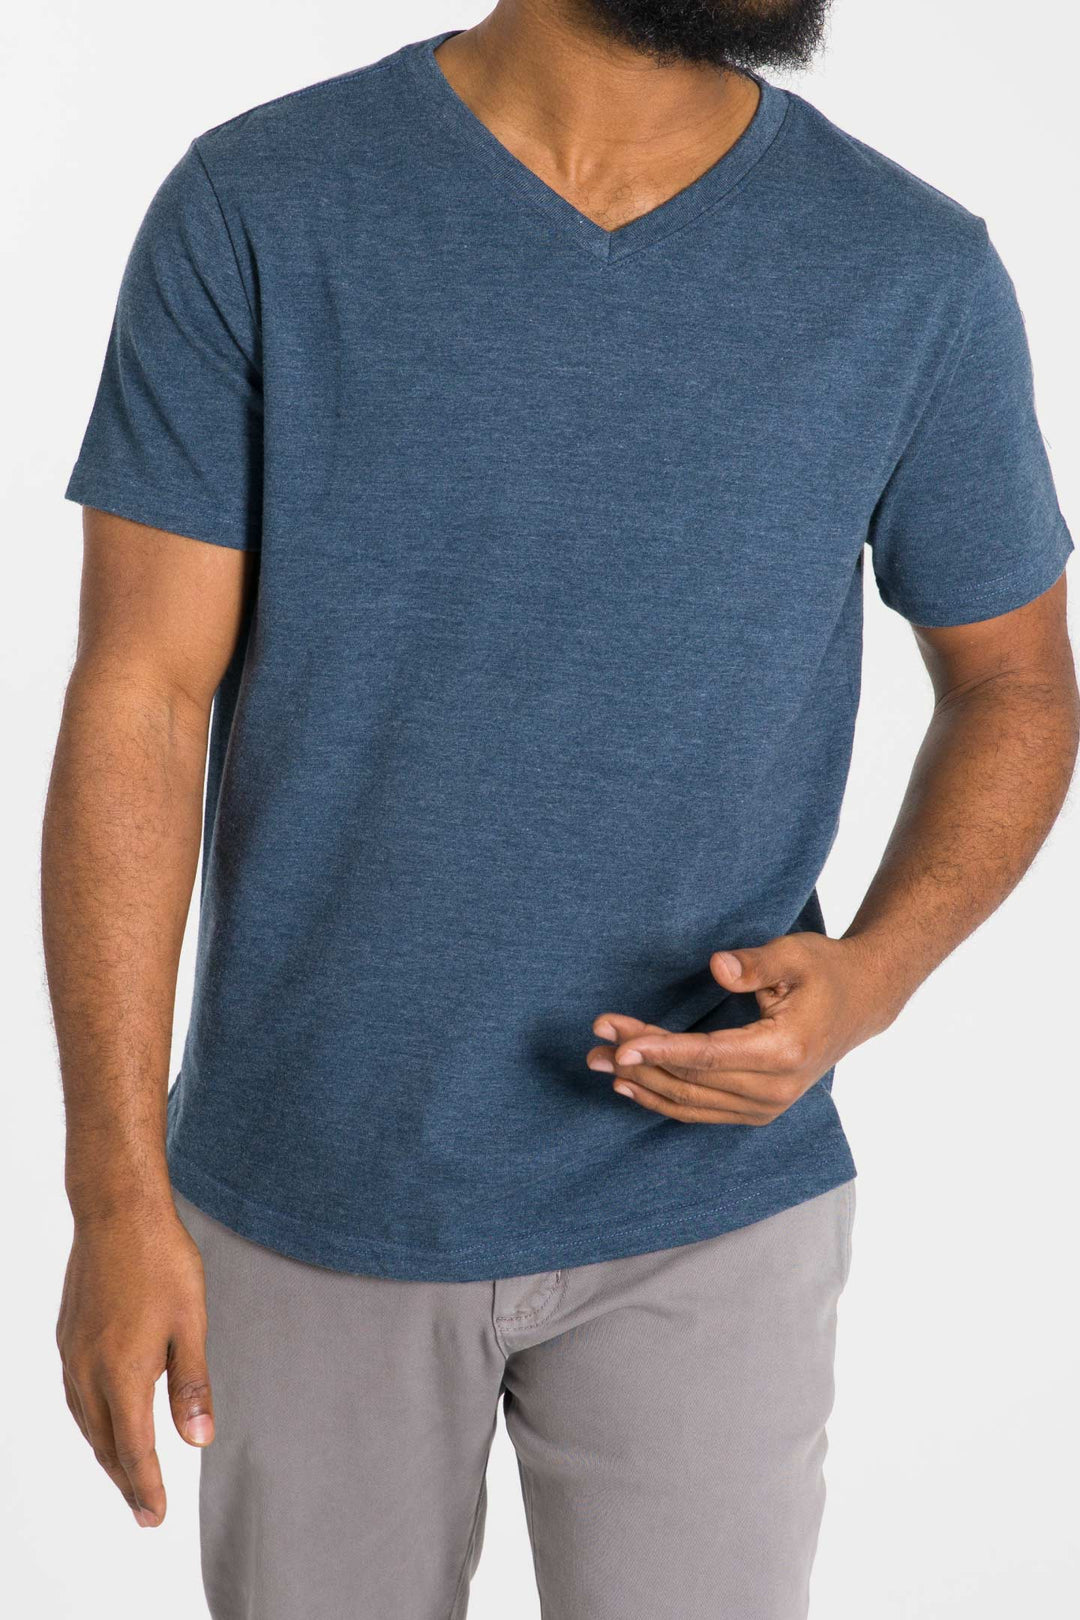 Buy Heather Storm Blue V-Crew T-Shirt for Short Men | Ash & Erie   Short Sleeve Tee